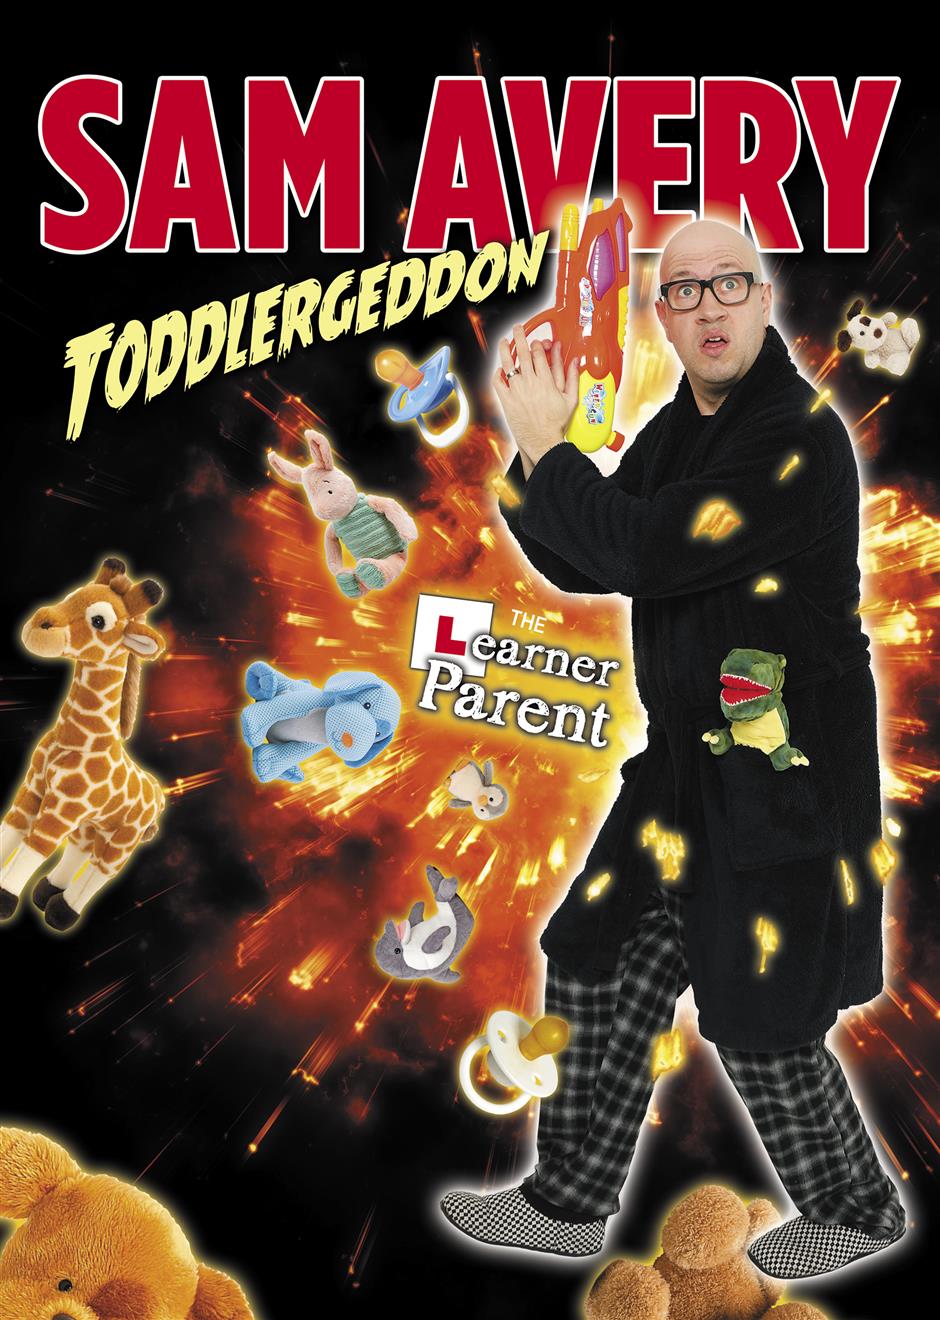 Sam Avery: Toddlergeddon